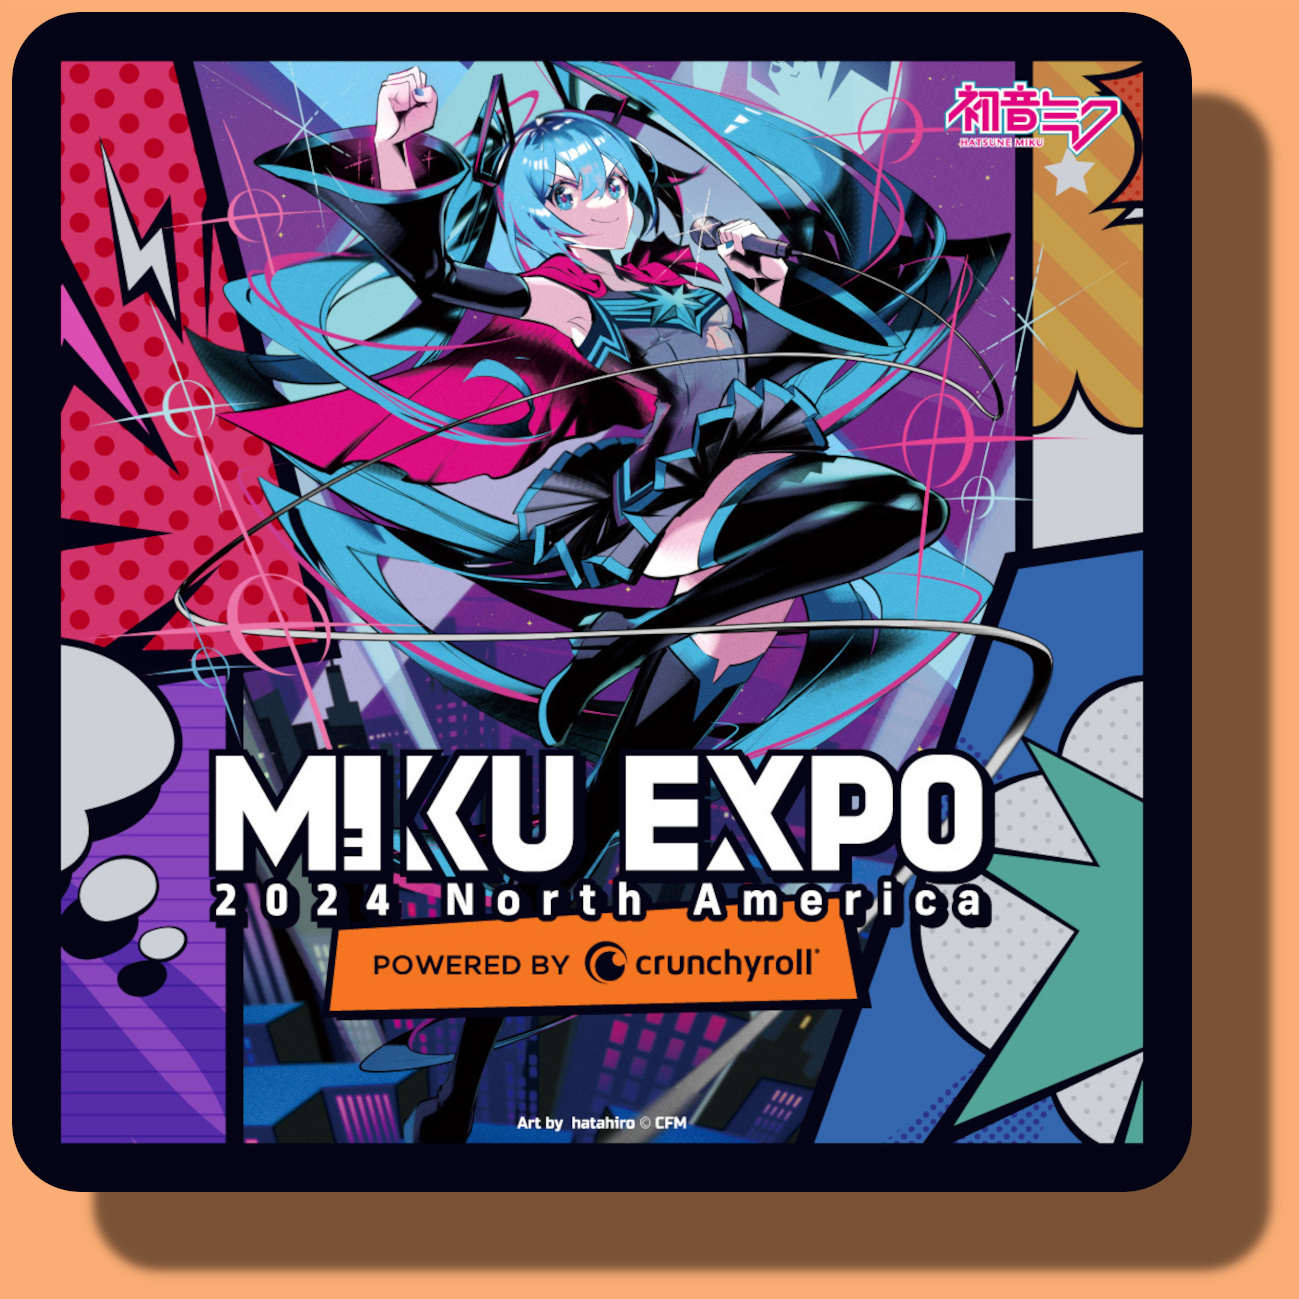 Miku Expo 2024 NA - Thursday, April 4,6066 Stadium Rd, Vancouver, BC